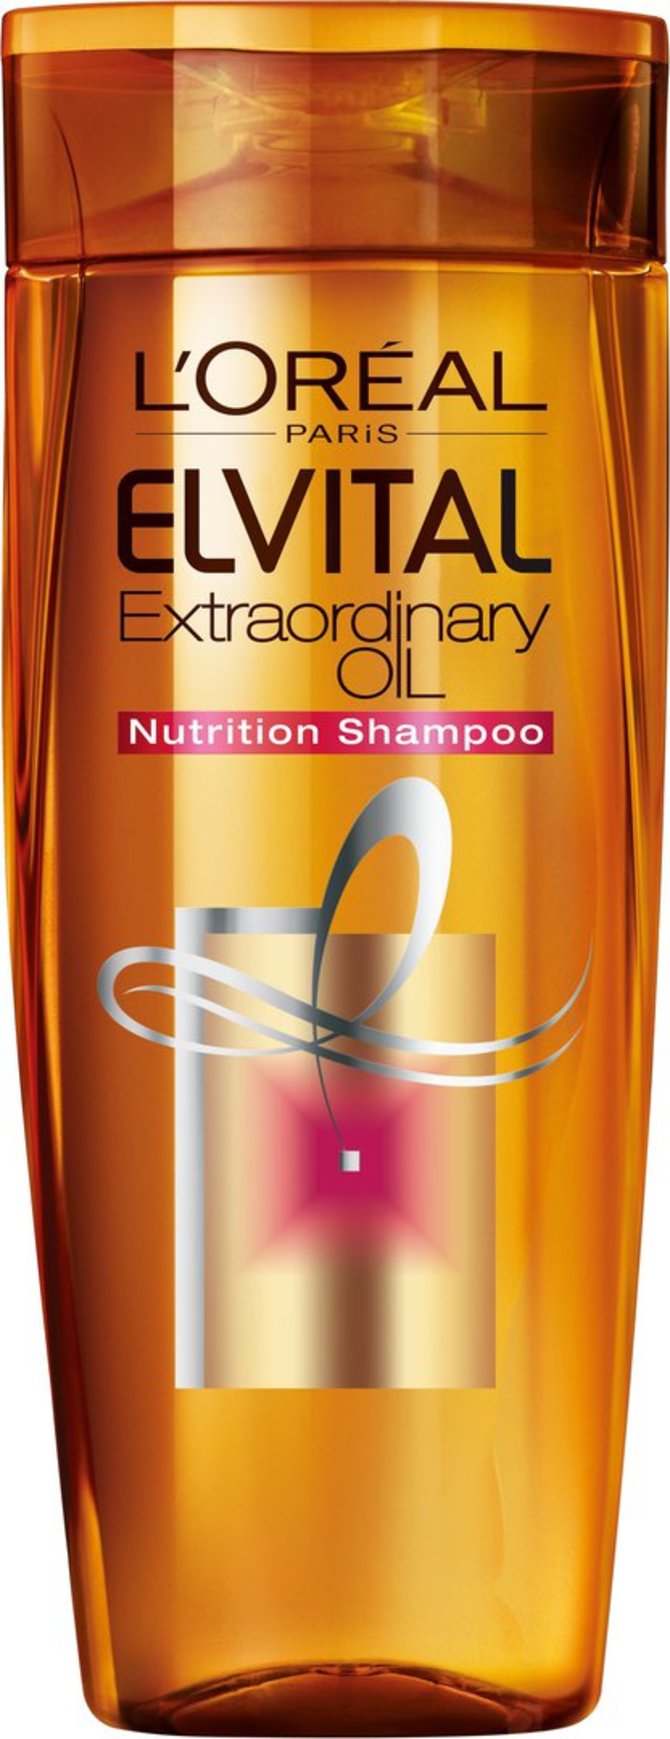 Kompanijos nuotr./„L'Oreal Paris Elvital Extraordinary Oil“ šampūnas.